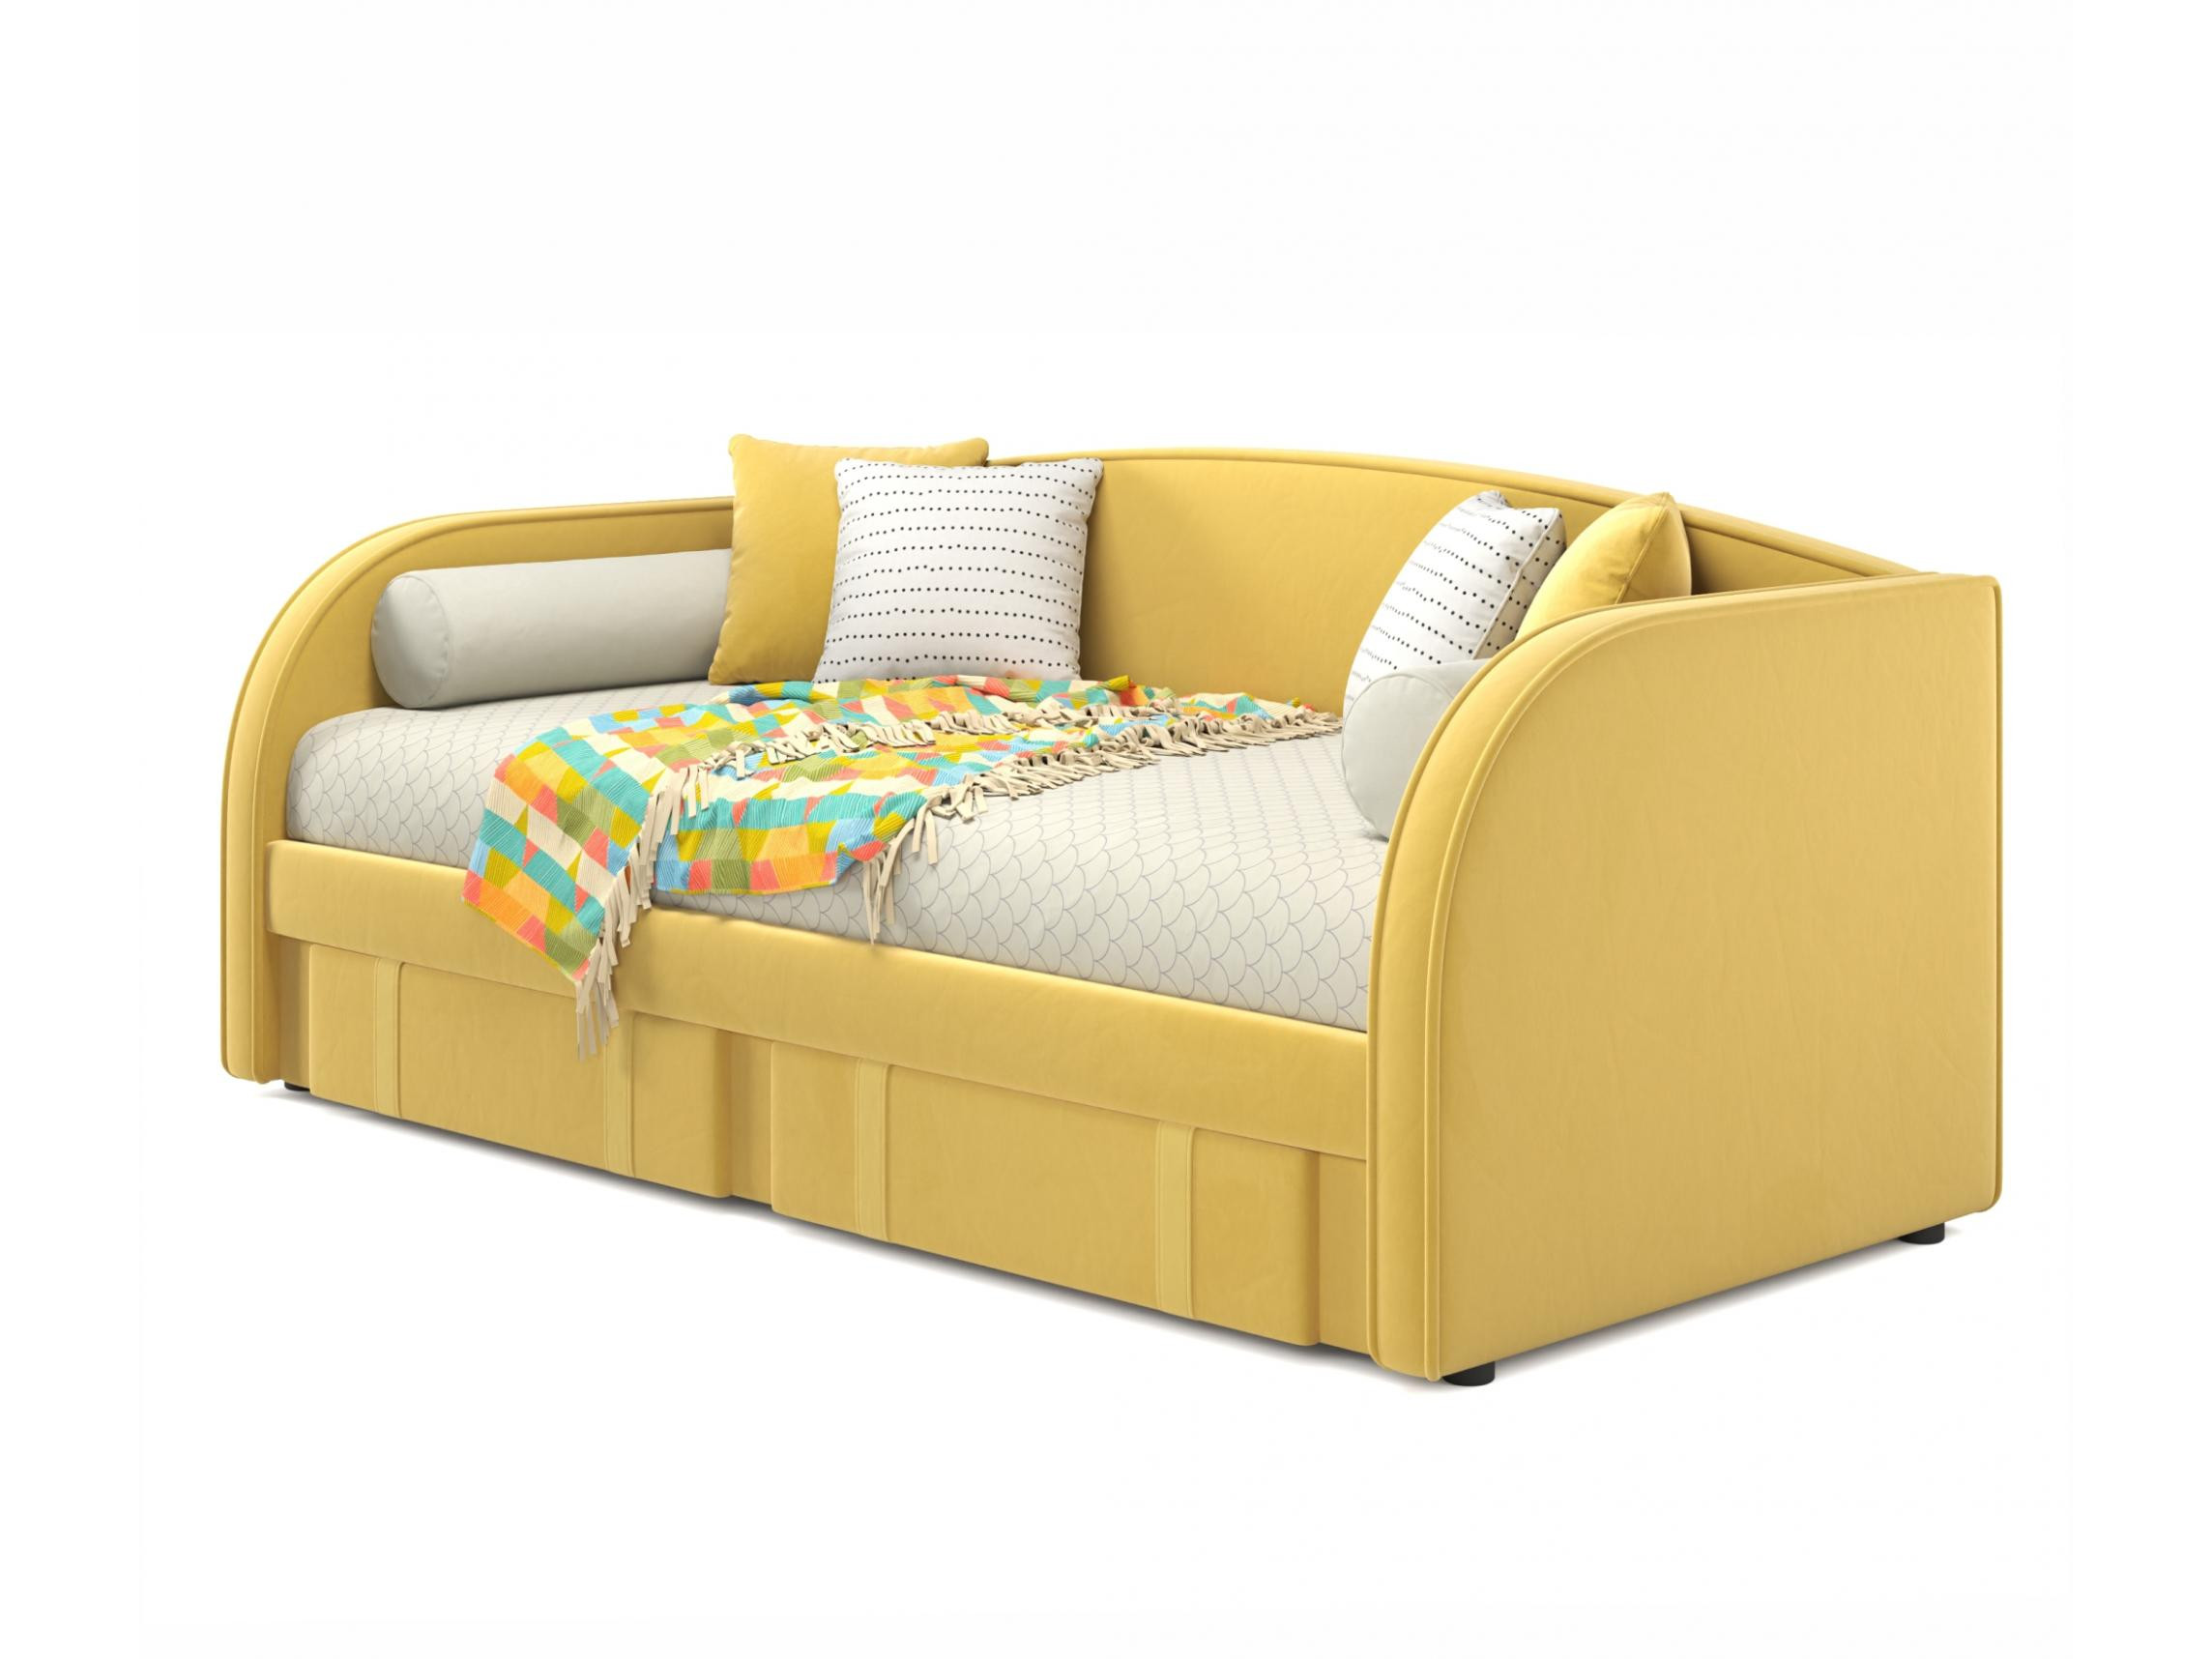 Мягкая кровать Elda 900 желтая с ортопедическим основанием желтый, Желтый, Велюр, ДСП мягкая кровать elda 900 шоколад с ортопедическим основанием шоколад коричневый велюр дсп фанера